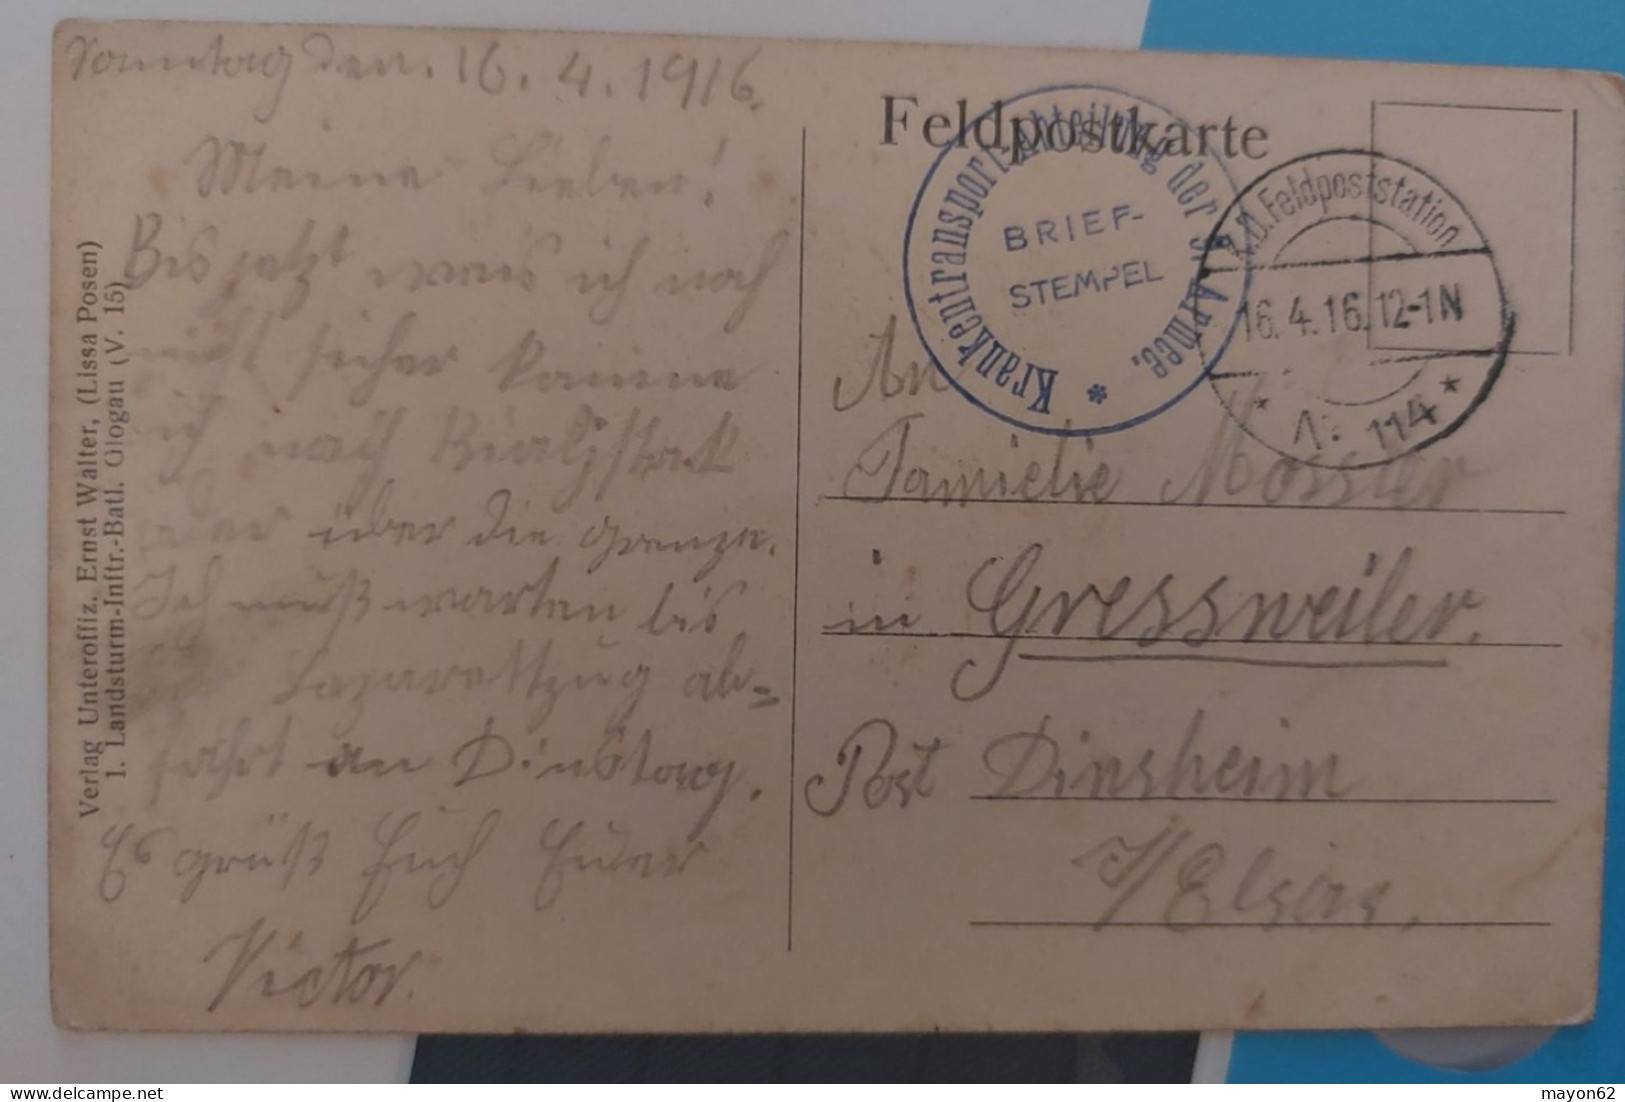 POLSKA - POLEN - POLAND - KLESZCZELE - RUSSISCHE KIRCHE VON DEUTSCHEN GRANATEN ZERSTART - RARA ERNST WALTER 1916 - Polen